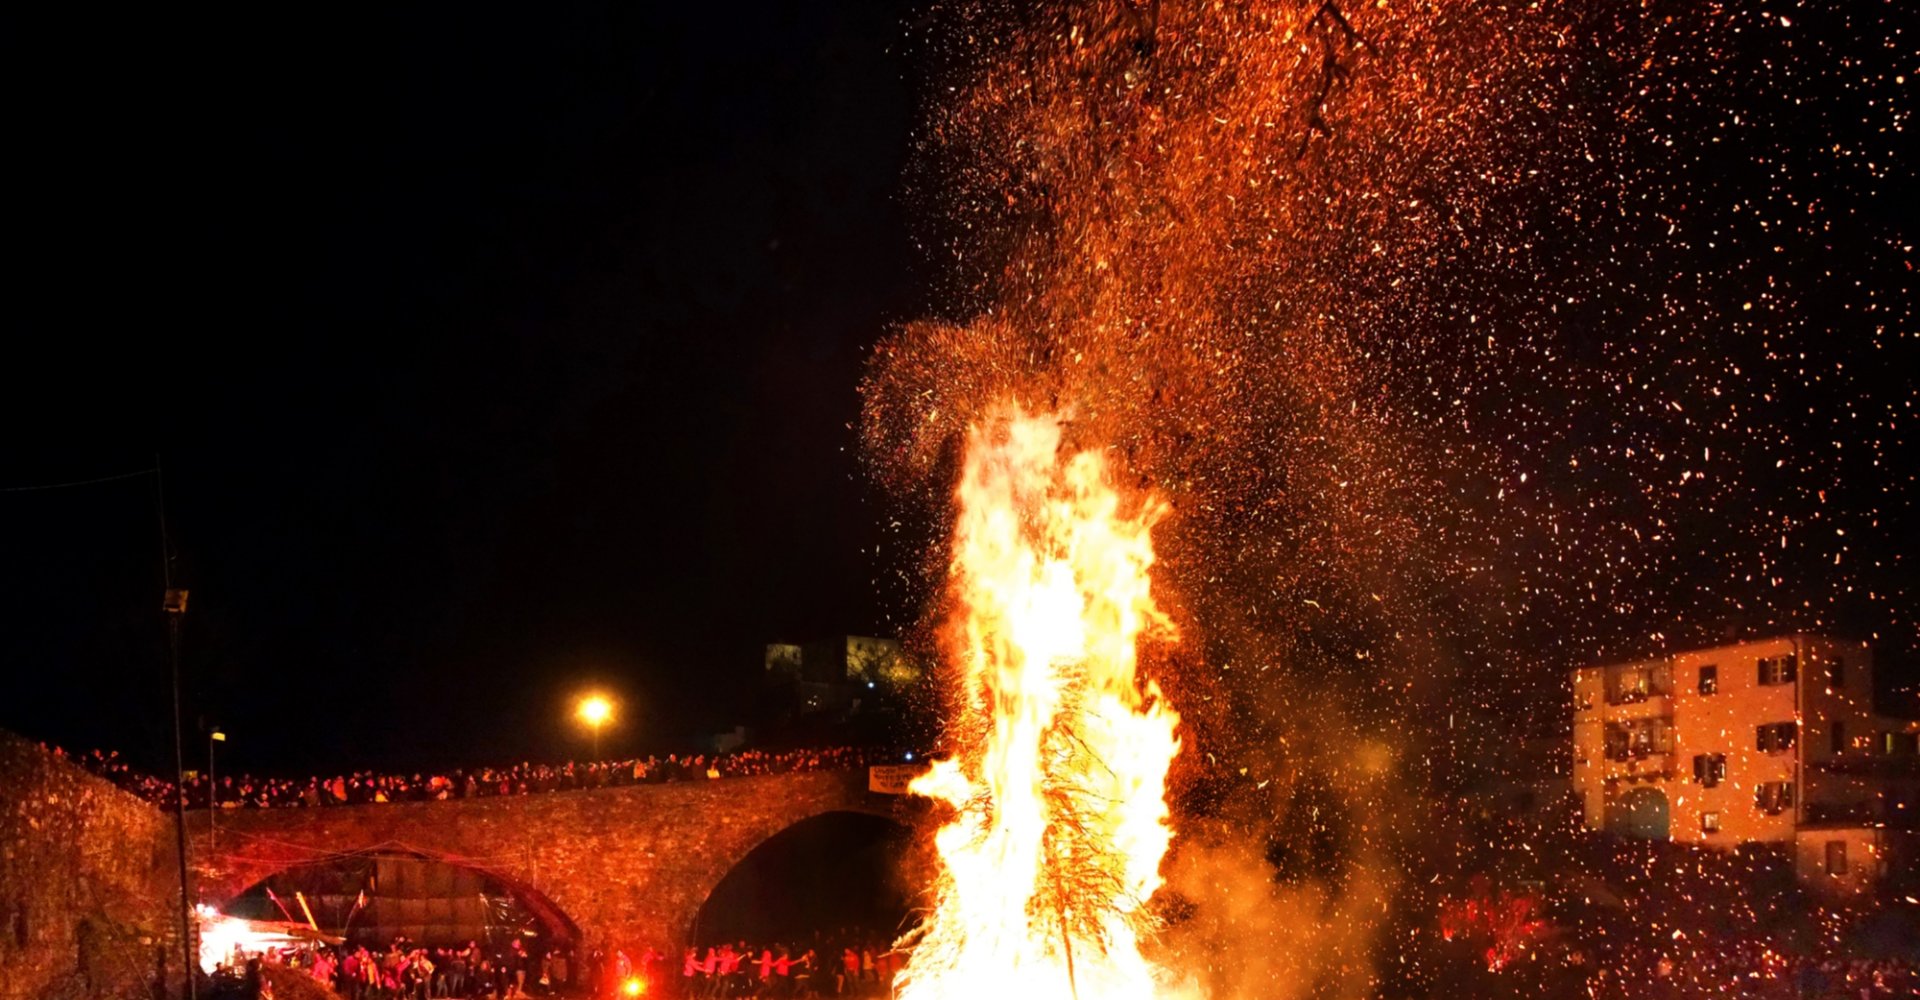 The bonfire of San Geminiano